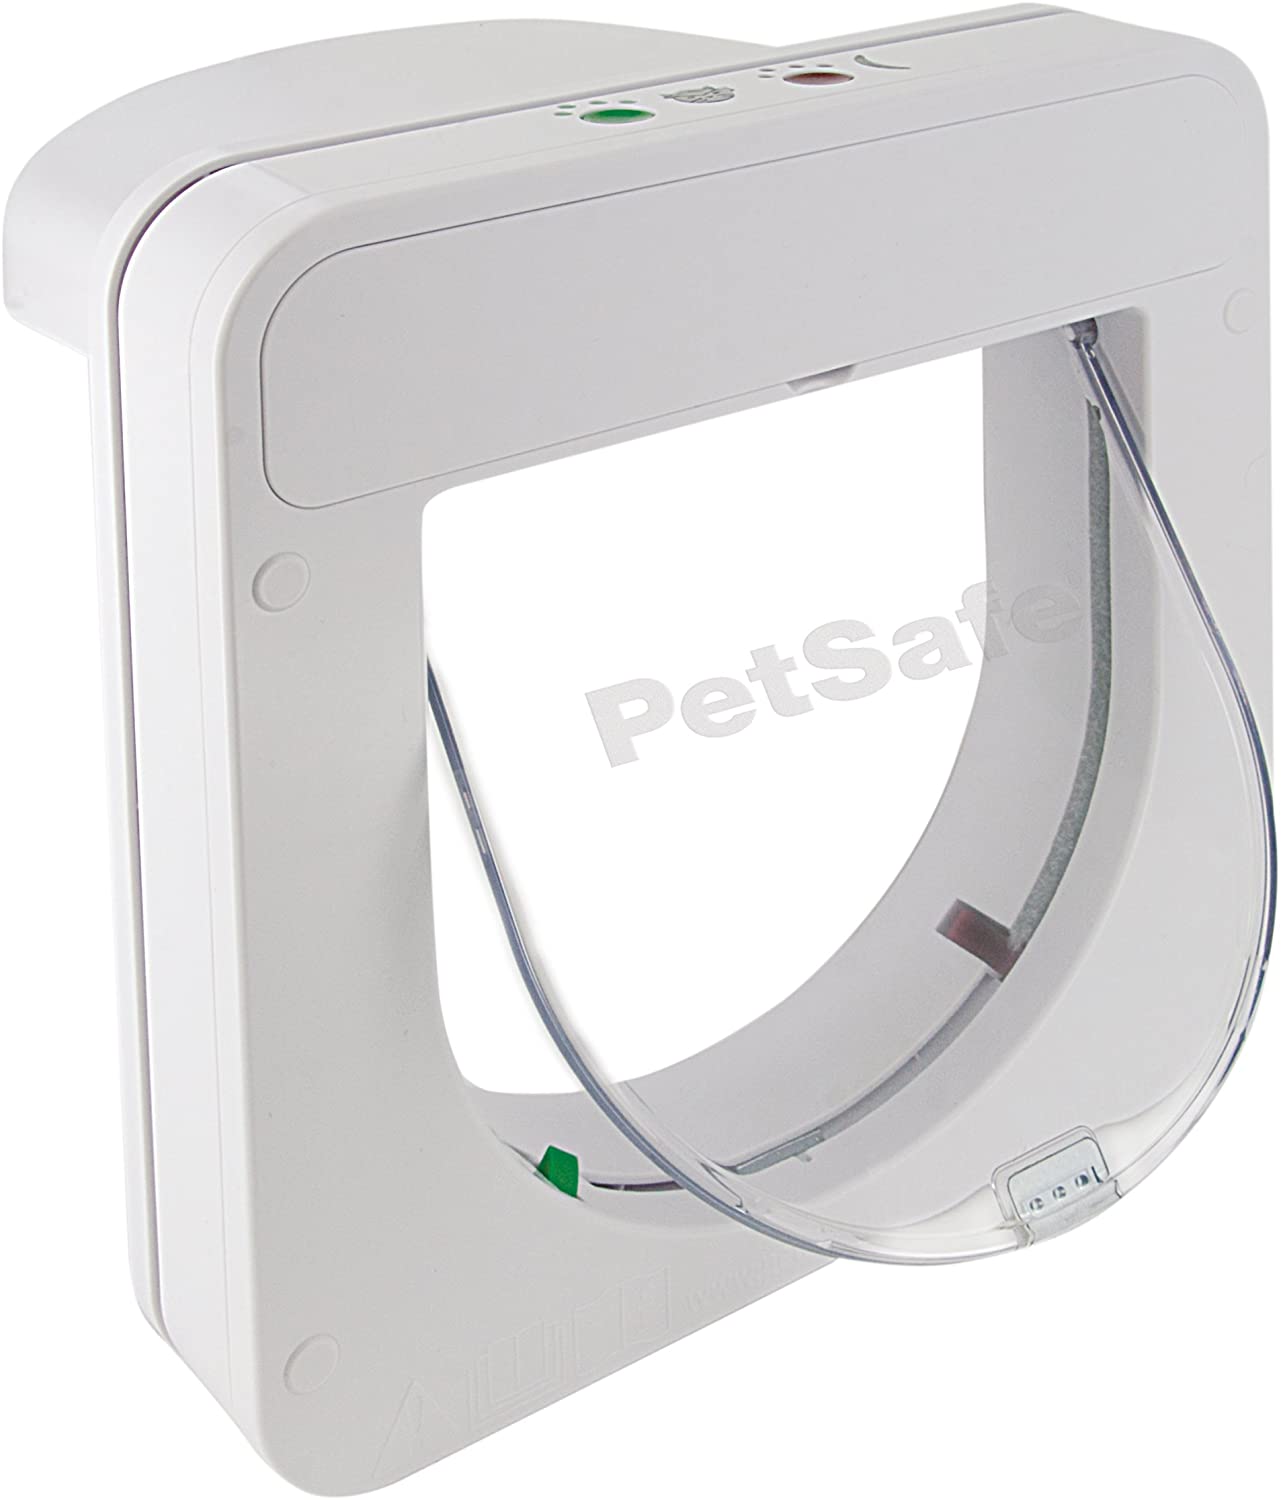  PetSafe 100ML - Puerta Petporte Smart Flap para Gatos 